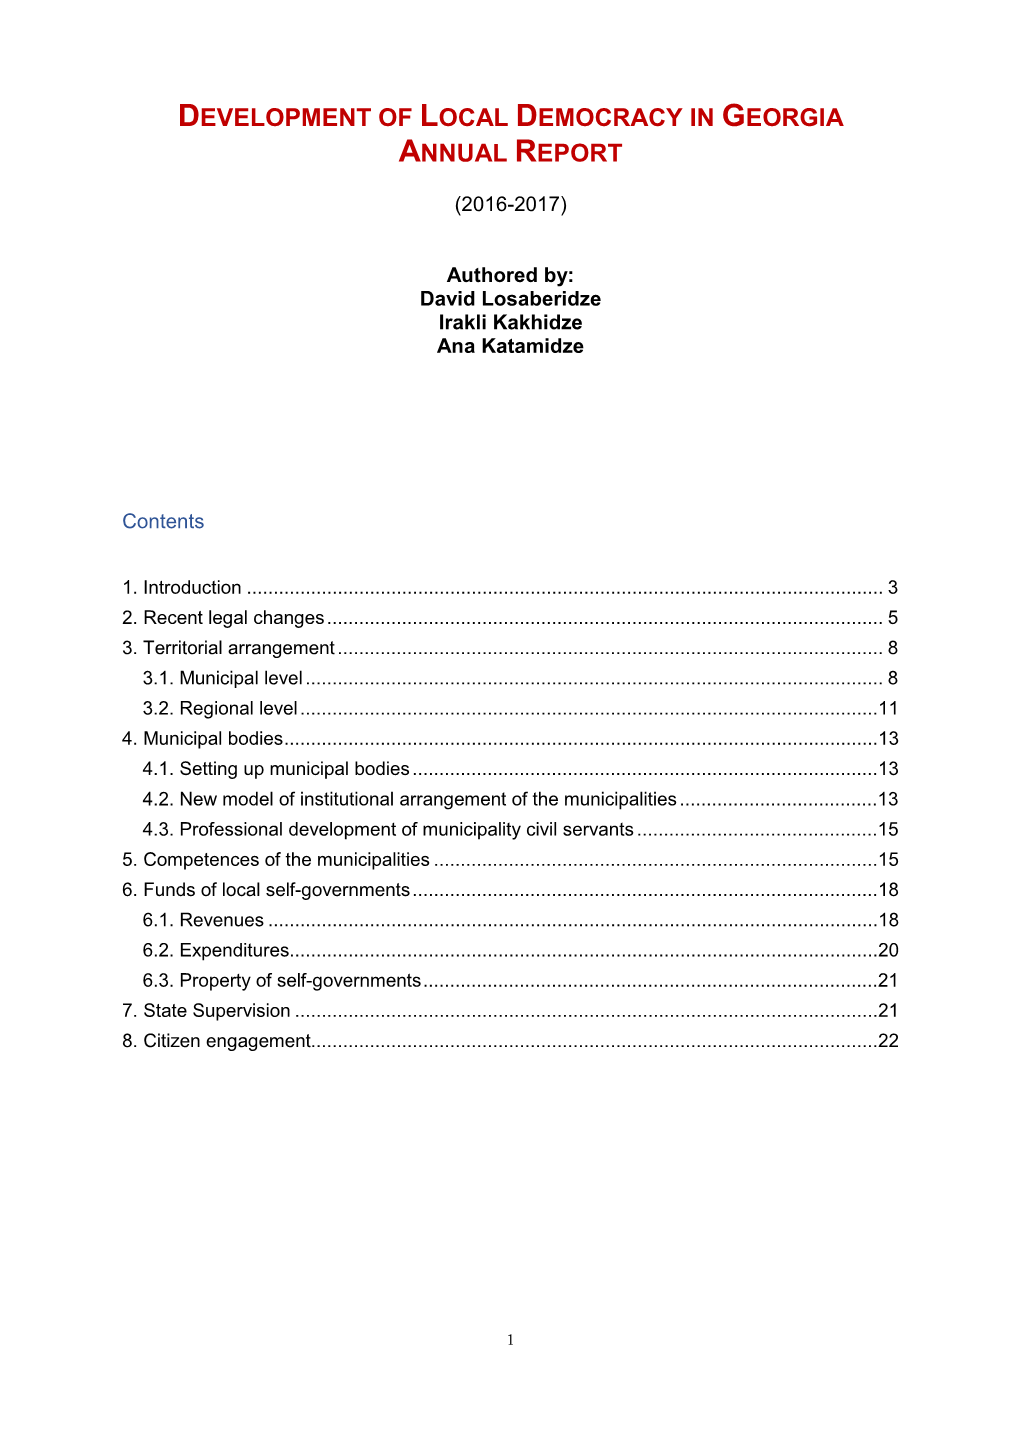 Development of Local Democracy in Georgia Annual Report